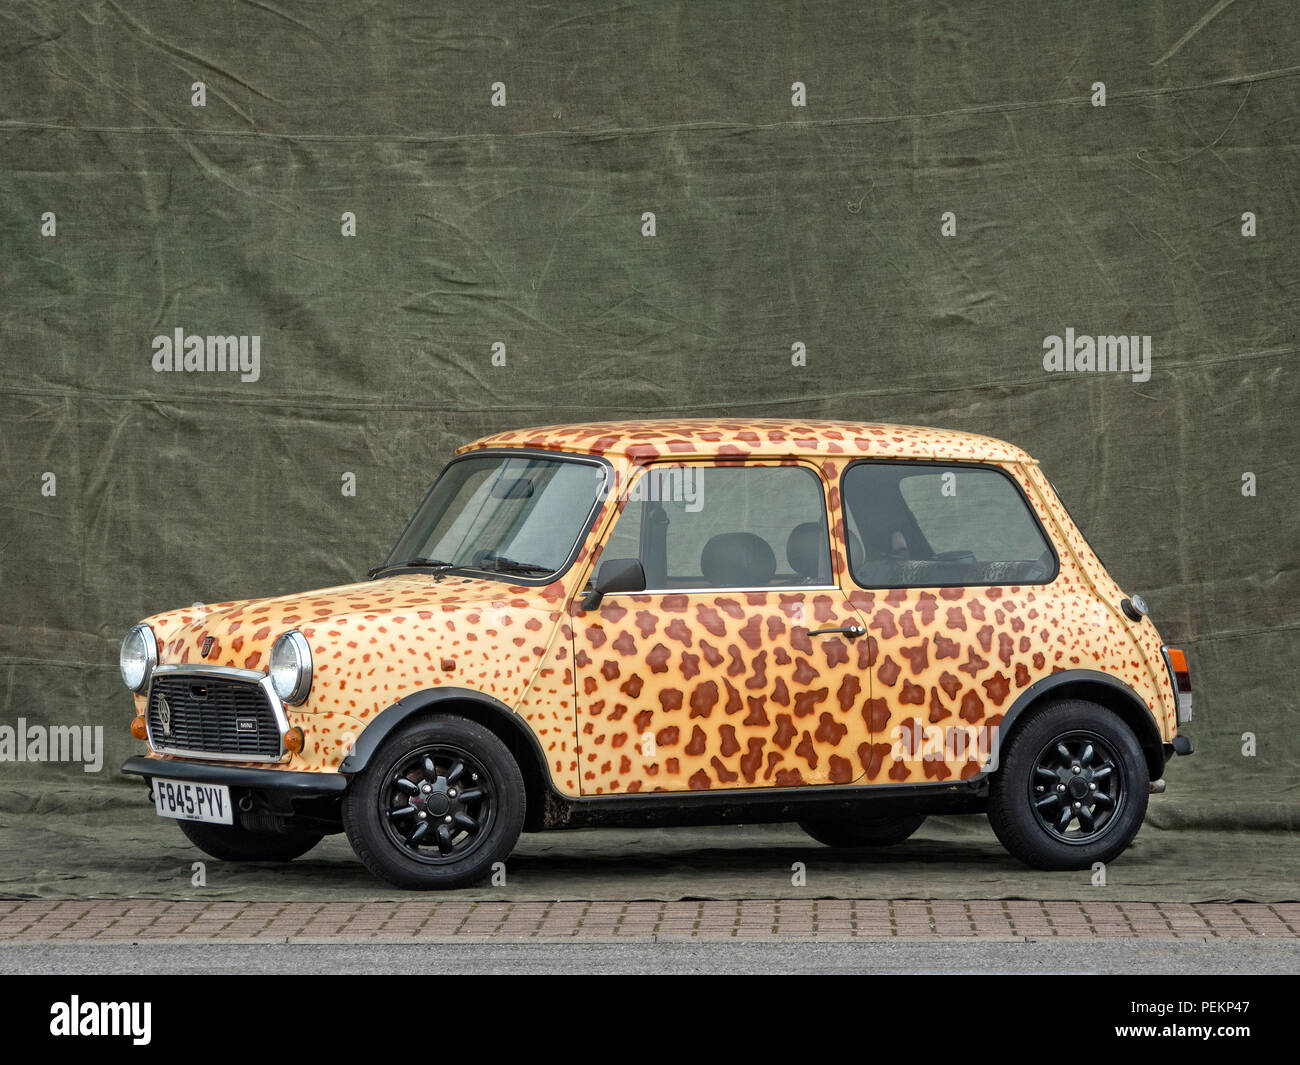 1989 Rover Mini Leopard skin design Stock Photo